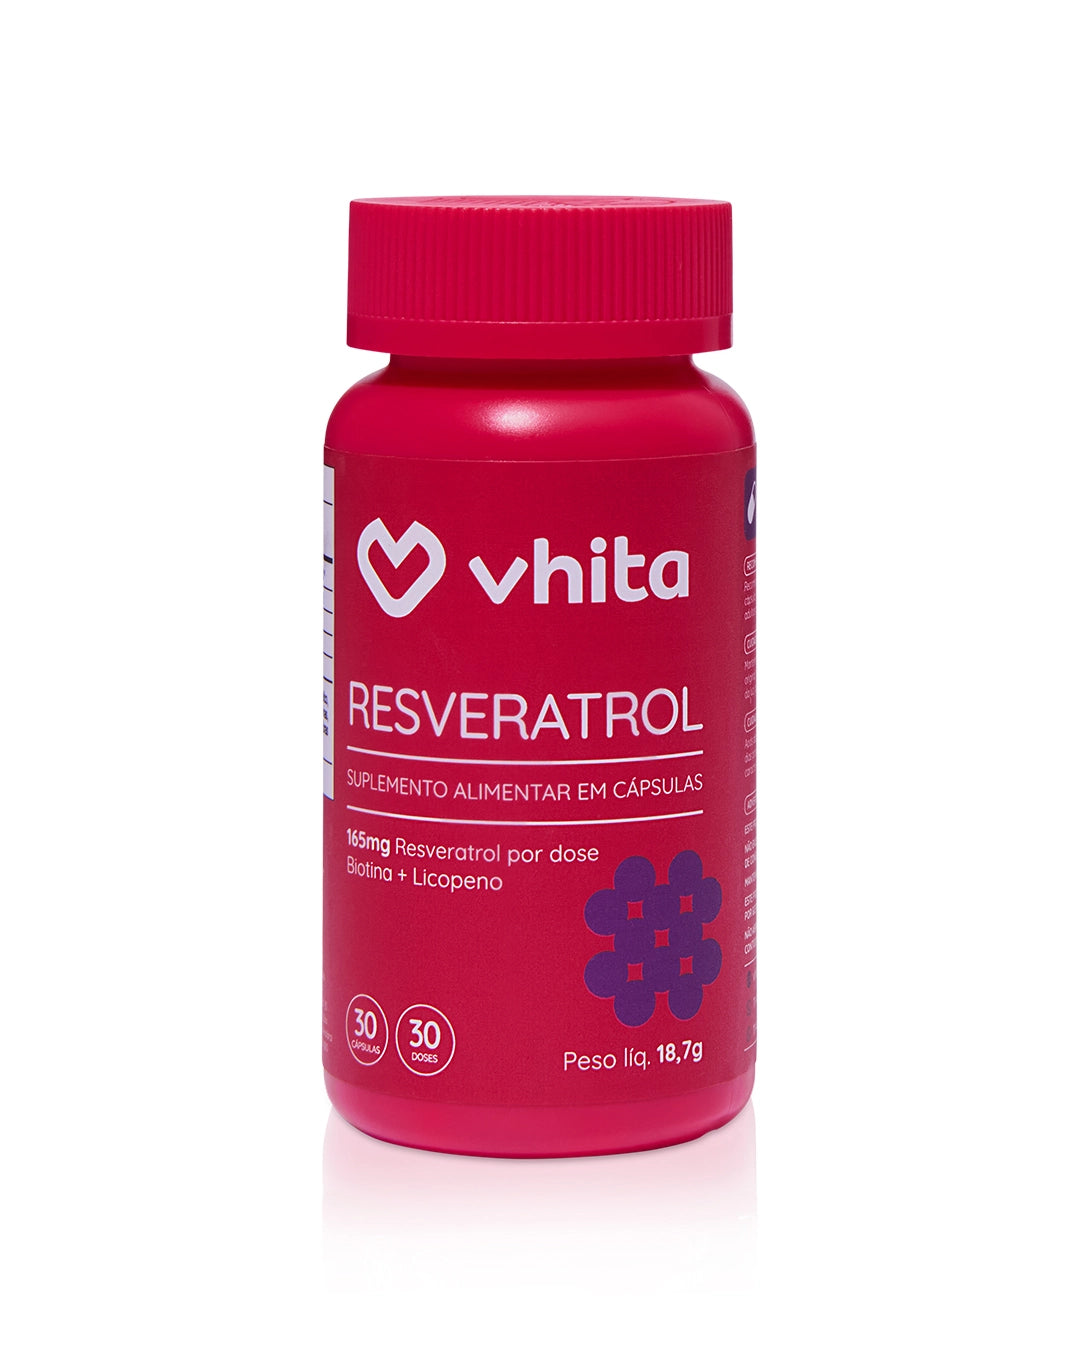 Resveratrol 165mg + licopeno biotina e proantocianidinas em 1 cápsula